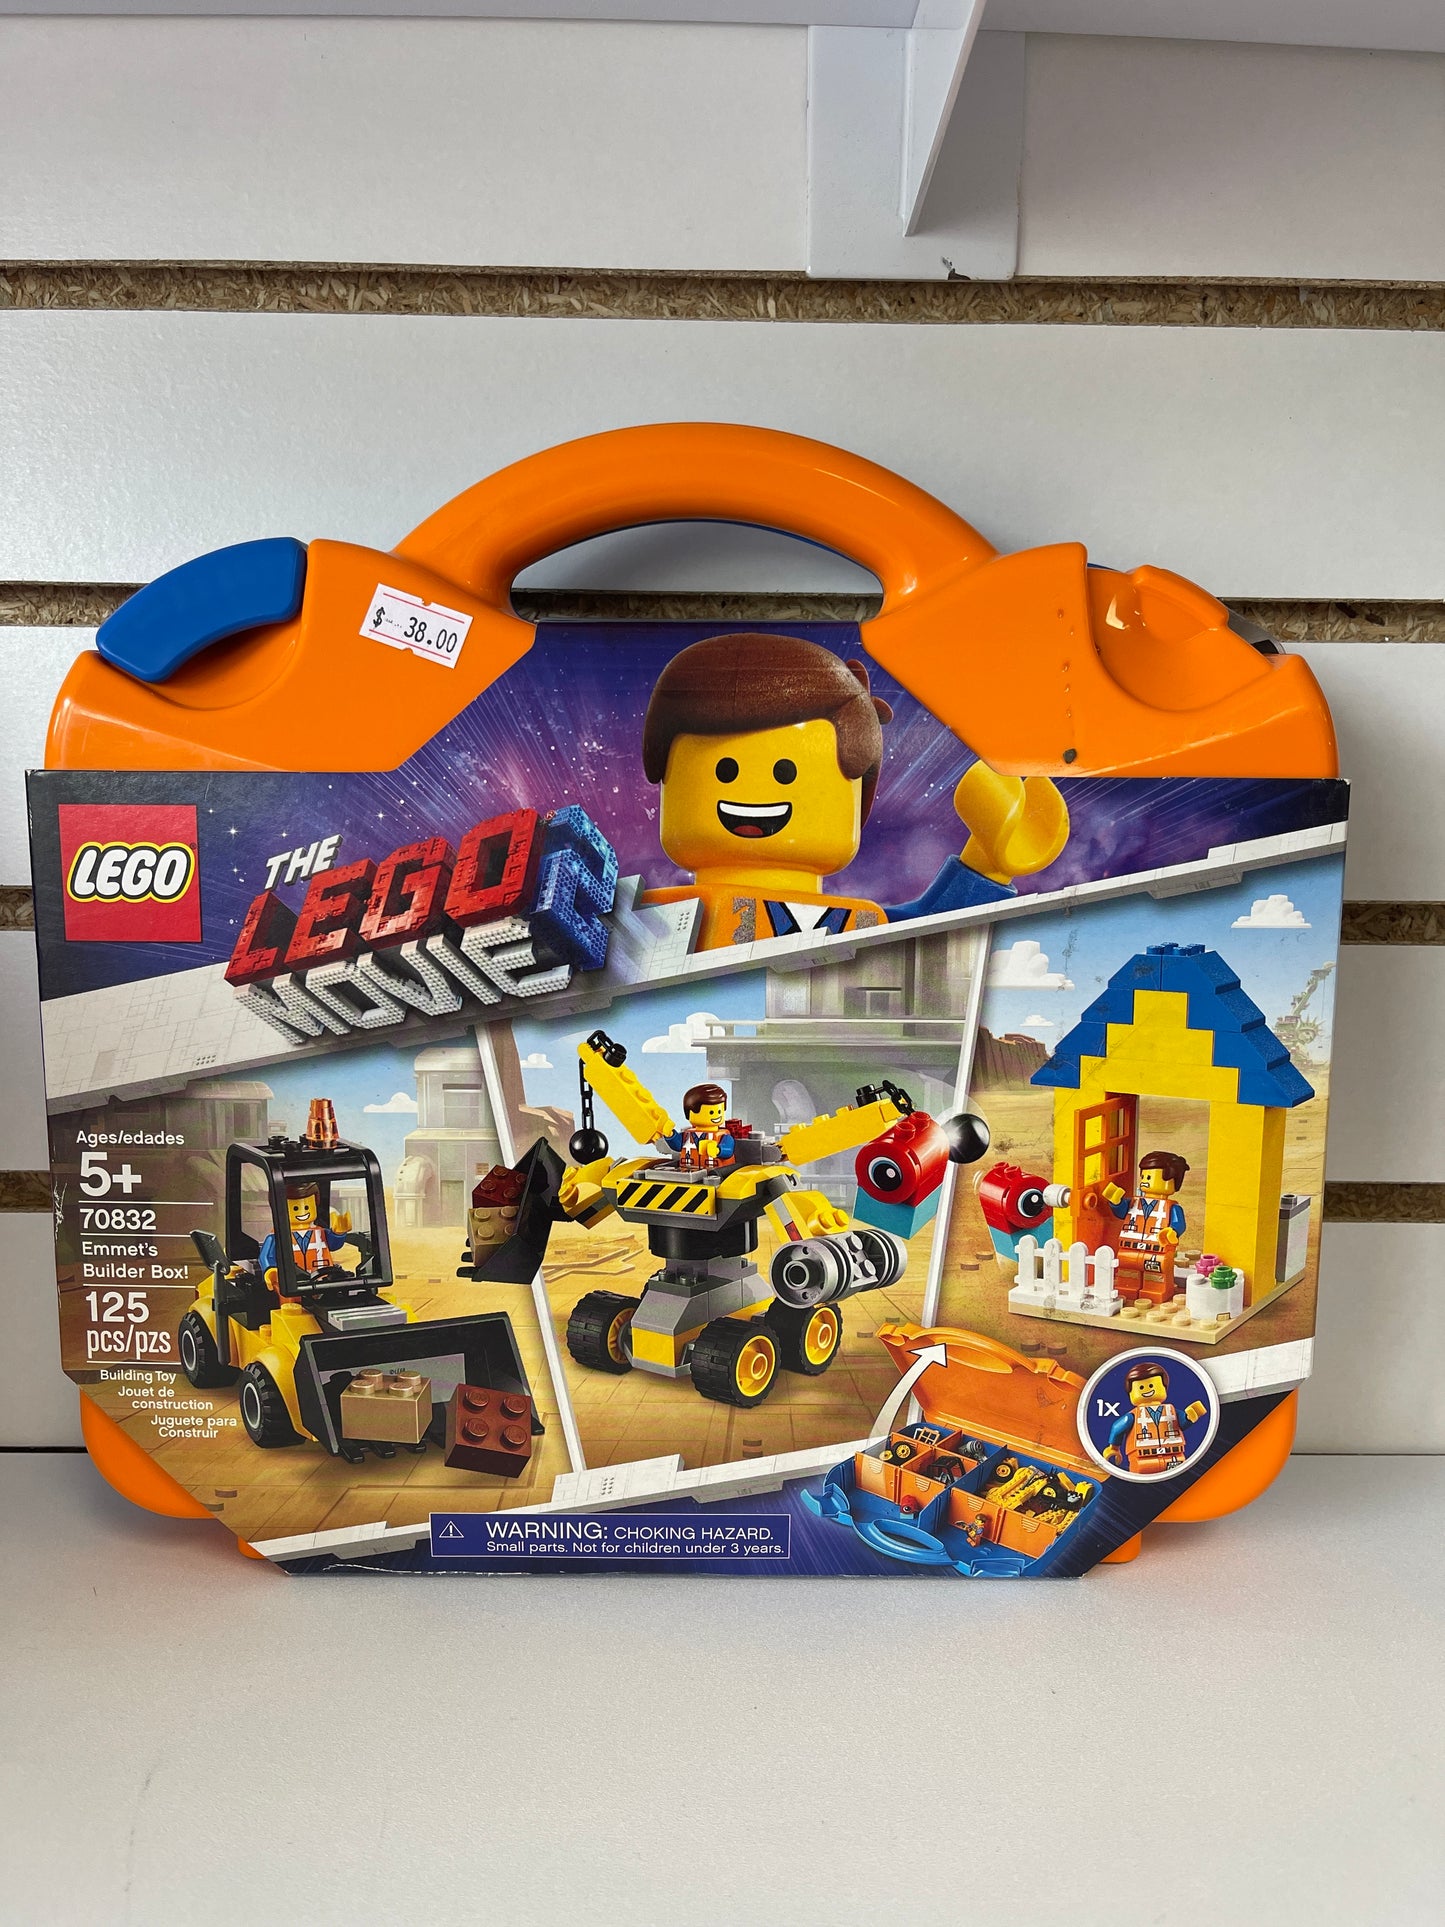 Lego Movie Emmet’s Builder Box